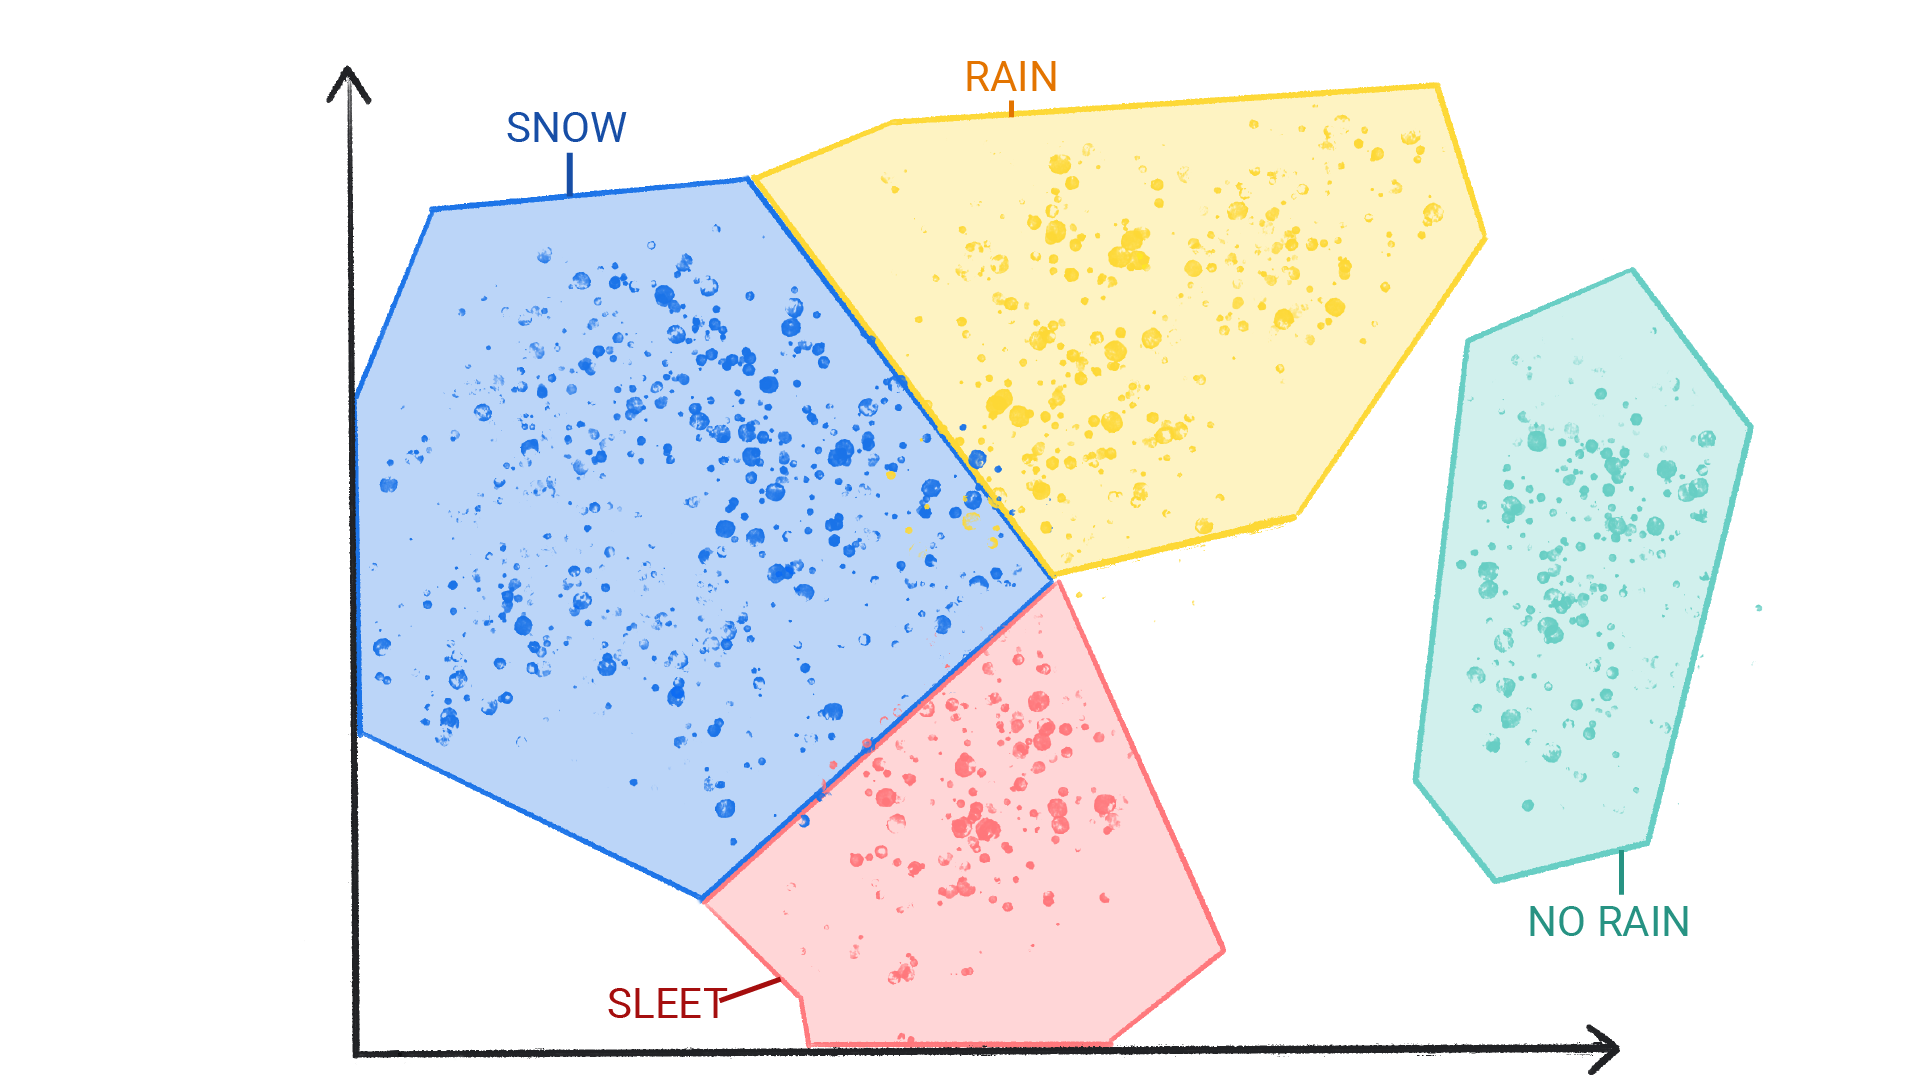 Una imagen que muestra puntos de colores en clústeres etiquetados como nieve, lluvia, granizo y sin lluvia, que están encerrados en una forma y se bordean entre sí.